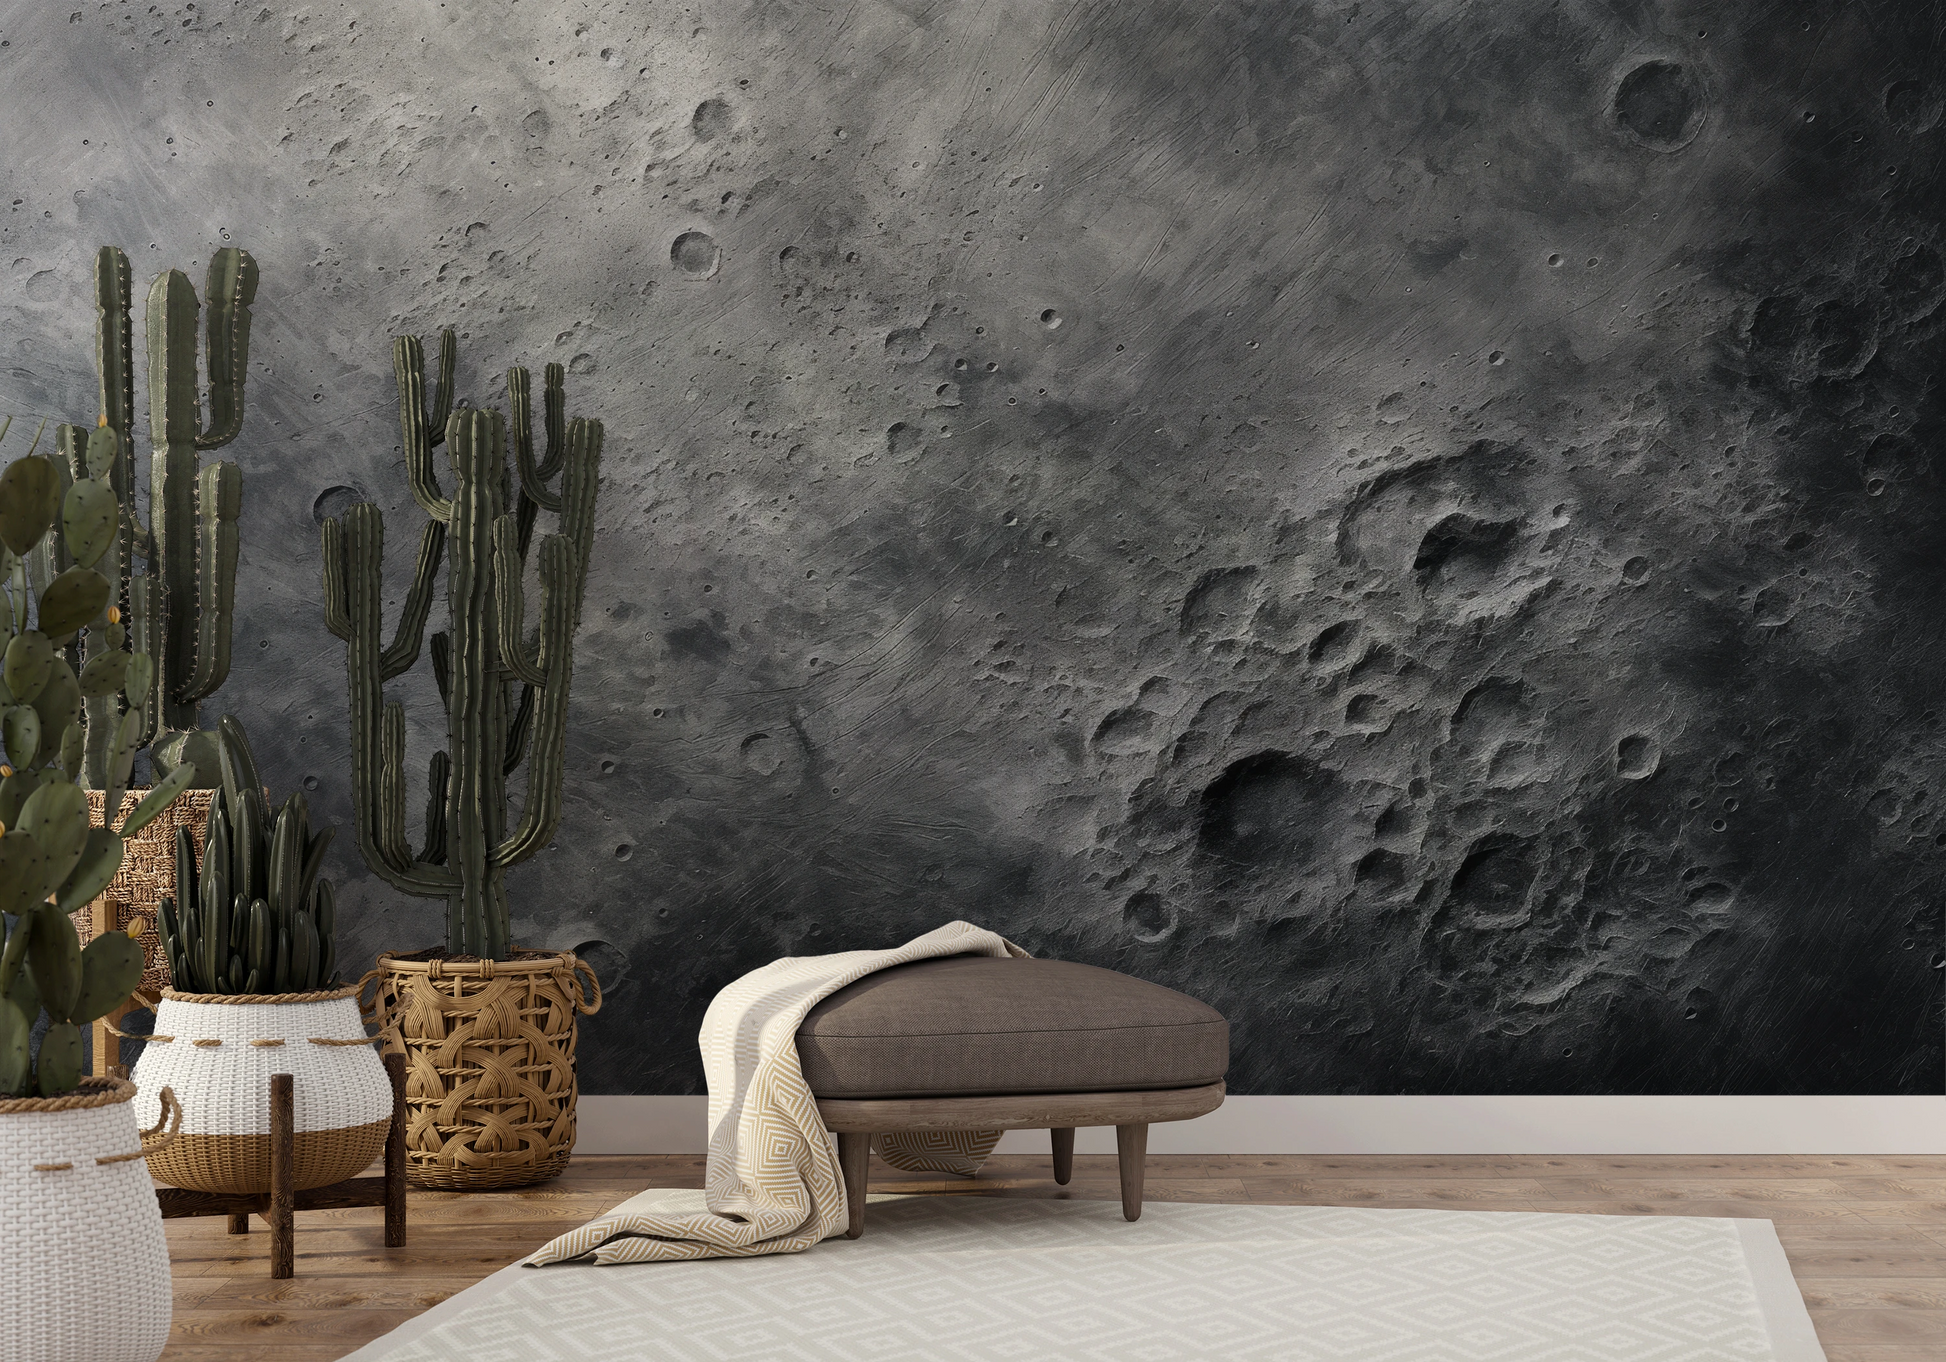 Wzór fototapety artystycznej o nazwie Lunar Detail pokazanej w aranżacji wnętrza.